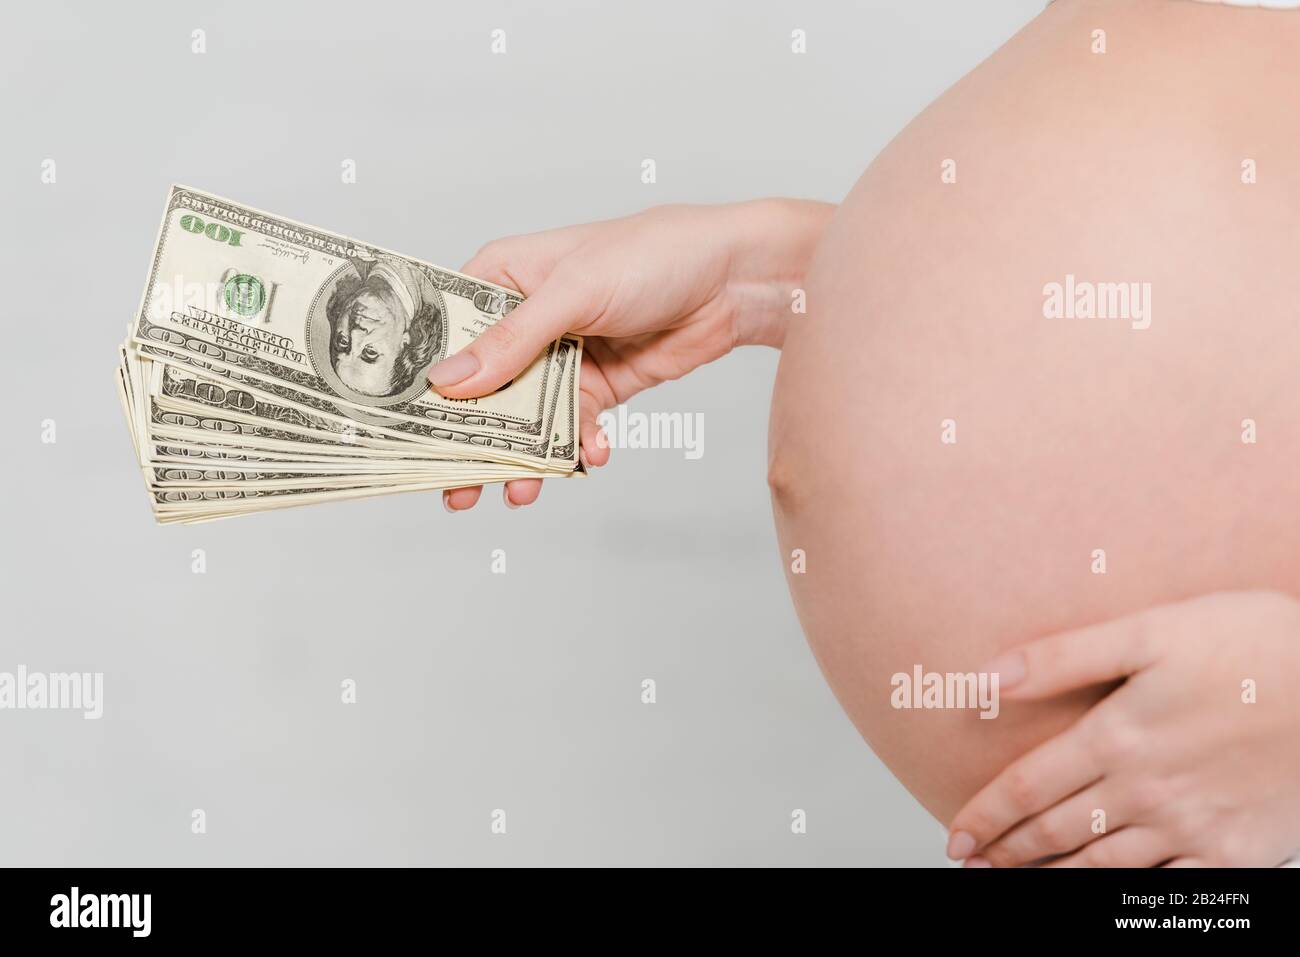 Vue rognée de la femme enceinte qui détient des billets en dollars sur fond gris, concept de maternité de mères porteuses Banque D'Images